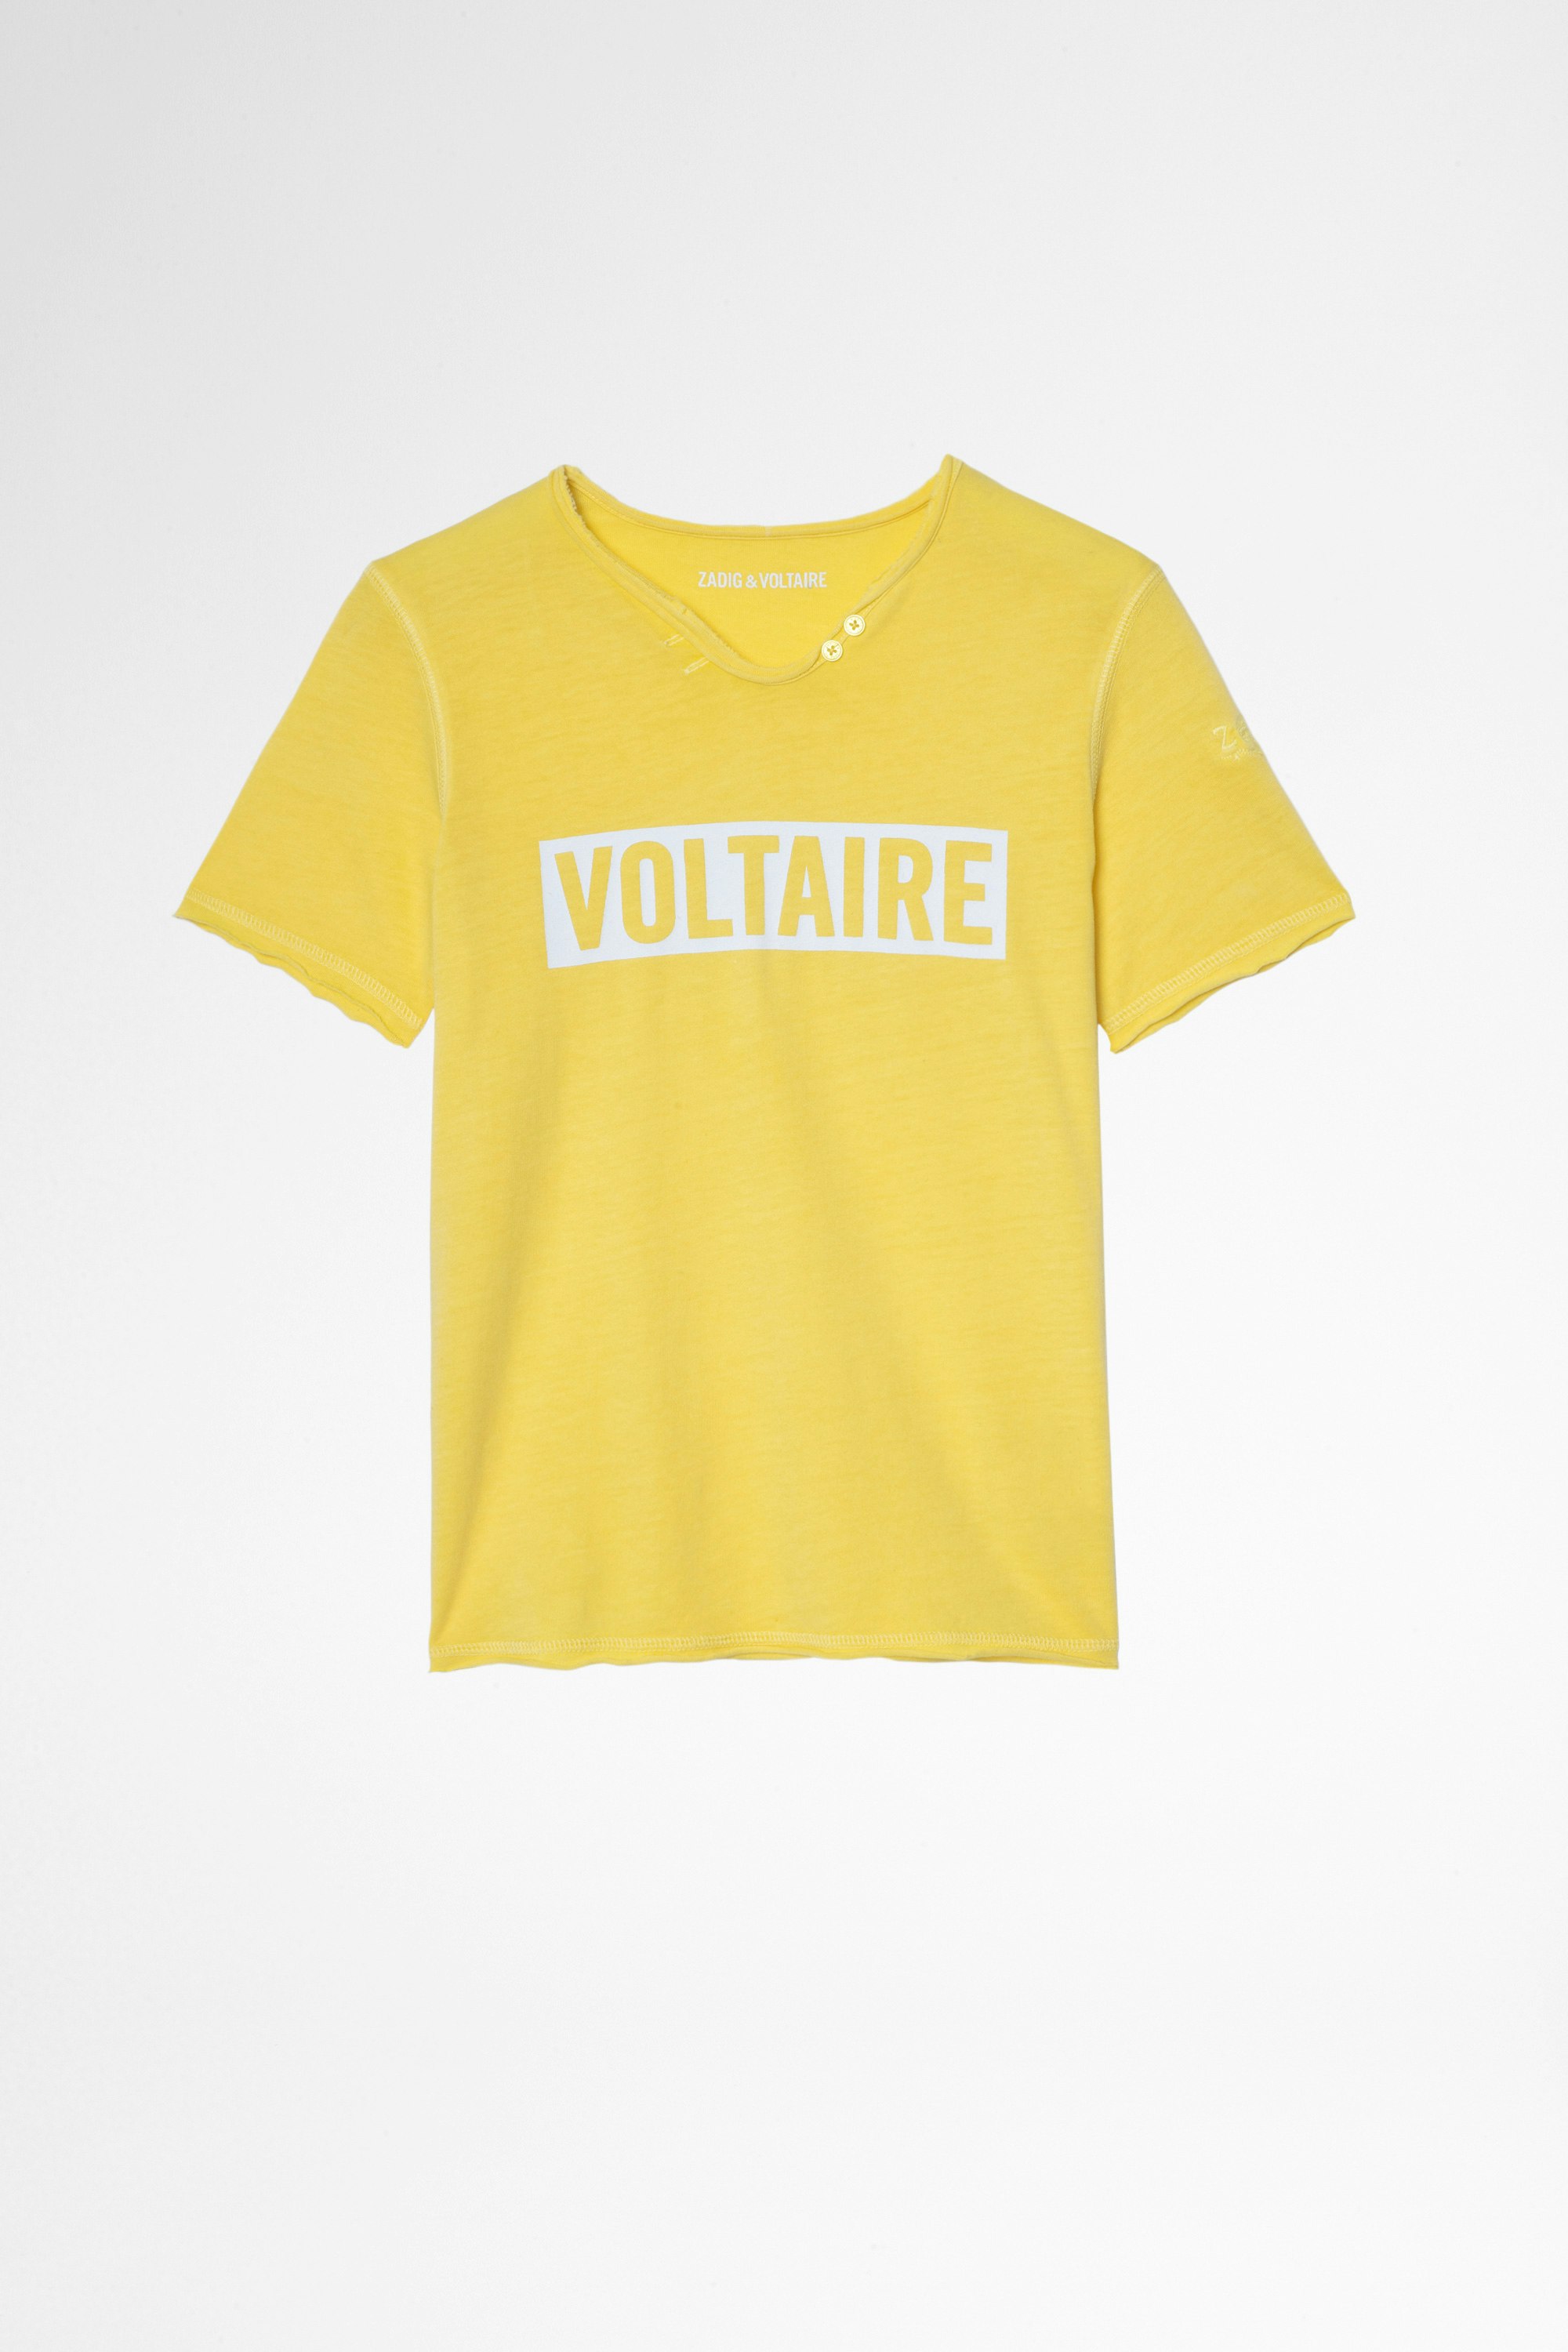 Camiseta Boxer Infantil Camiseta amarilla de algodón infantil